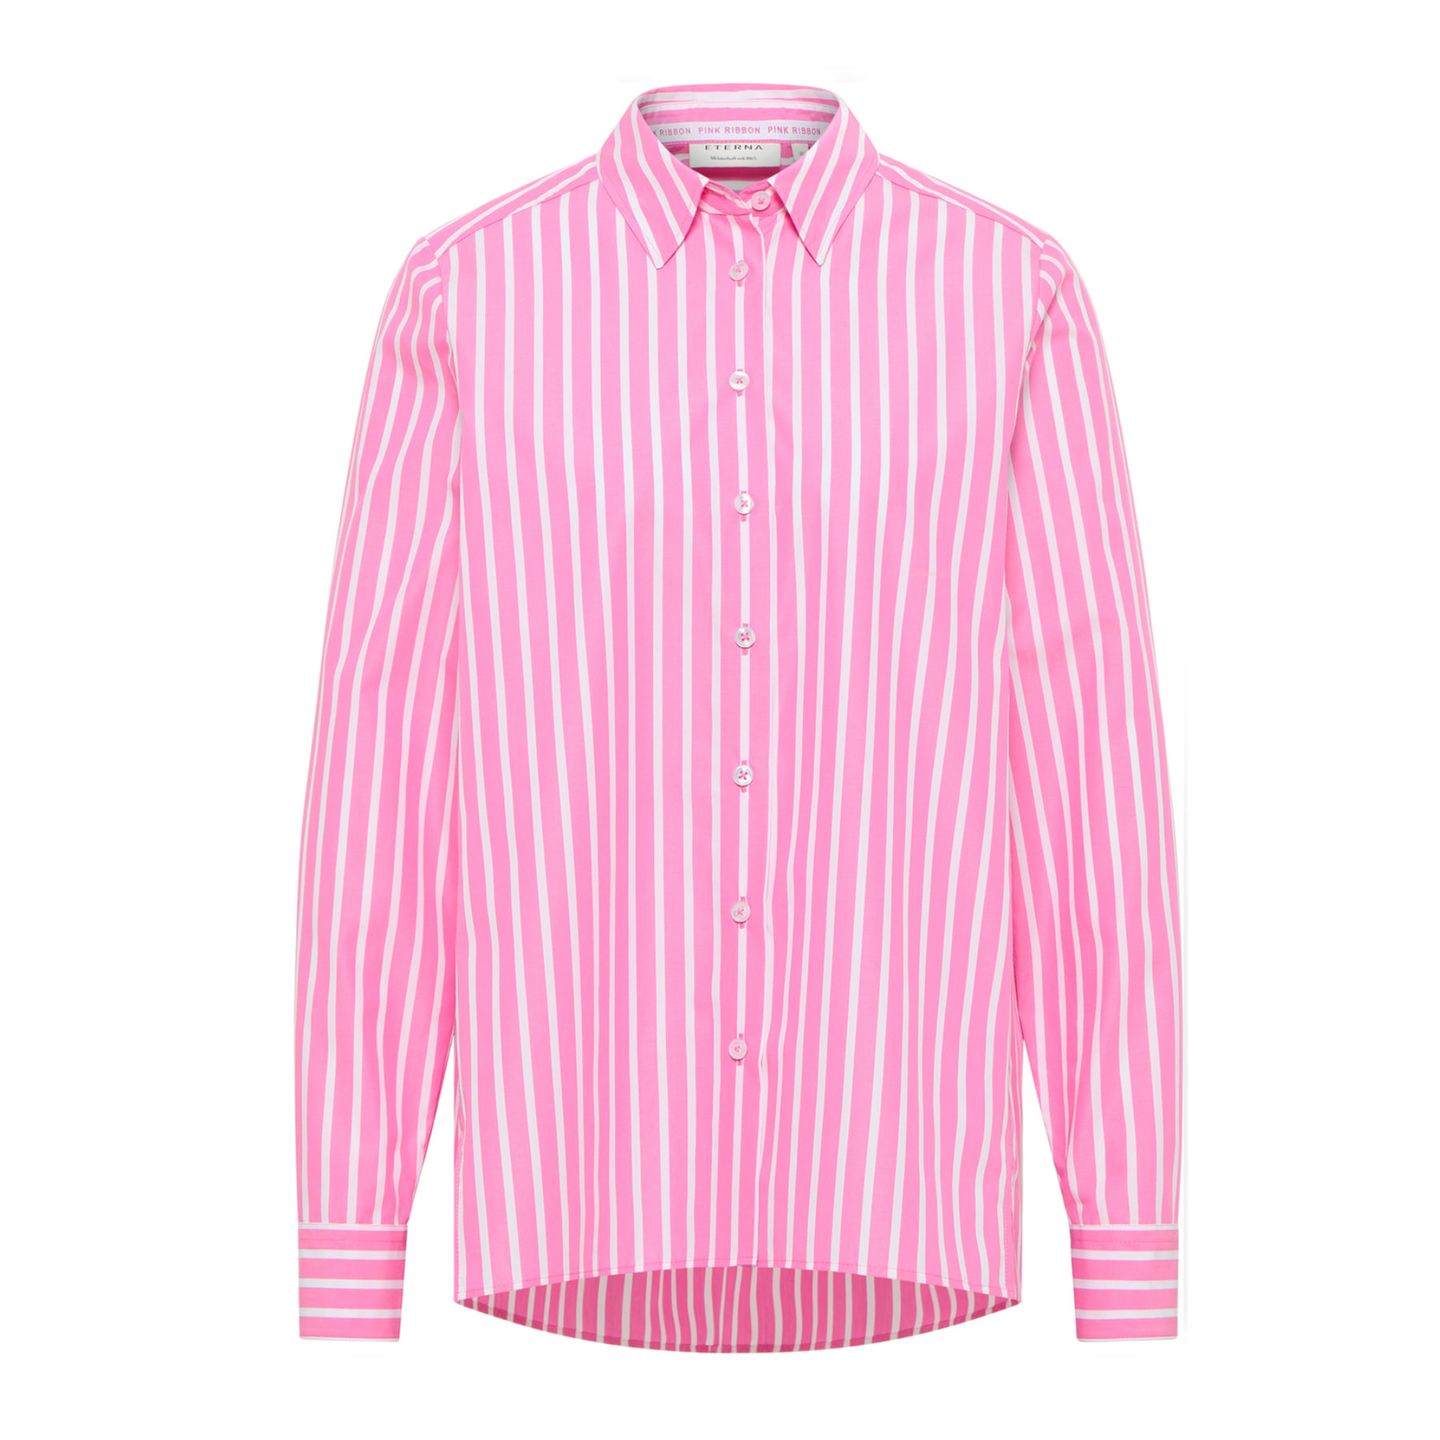 Zum zweiten Mal hat Eterna eine Bluse entworfen, mit deren Verkauf sie die Brustkrebsinitiative Pink Ribbon Deutschland unterstützt. Vier Kampagnengesichter, alle Brustkrebspatientinnen, geben auf der Website zusätzlich wertvolle Tipps zum Abtasten der Brust, zur Früherkennung von Brustkrebs und lassen auch in ihre individuellen Geschichten blicken. Die Bluse ist für etwa 90 Euro über Eterna erhältlich. 